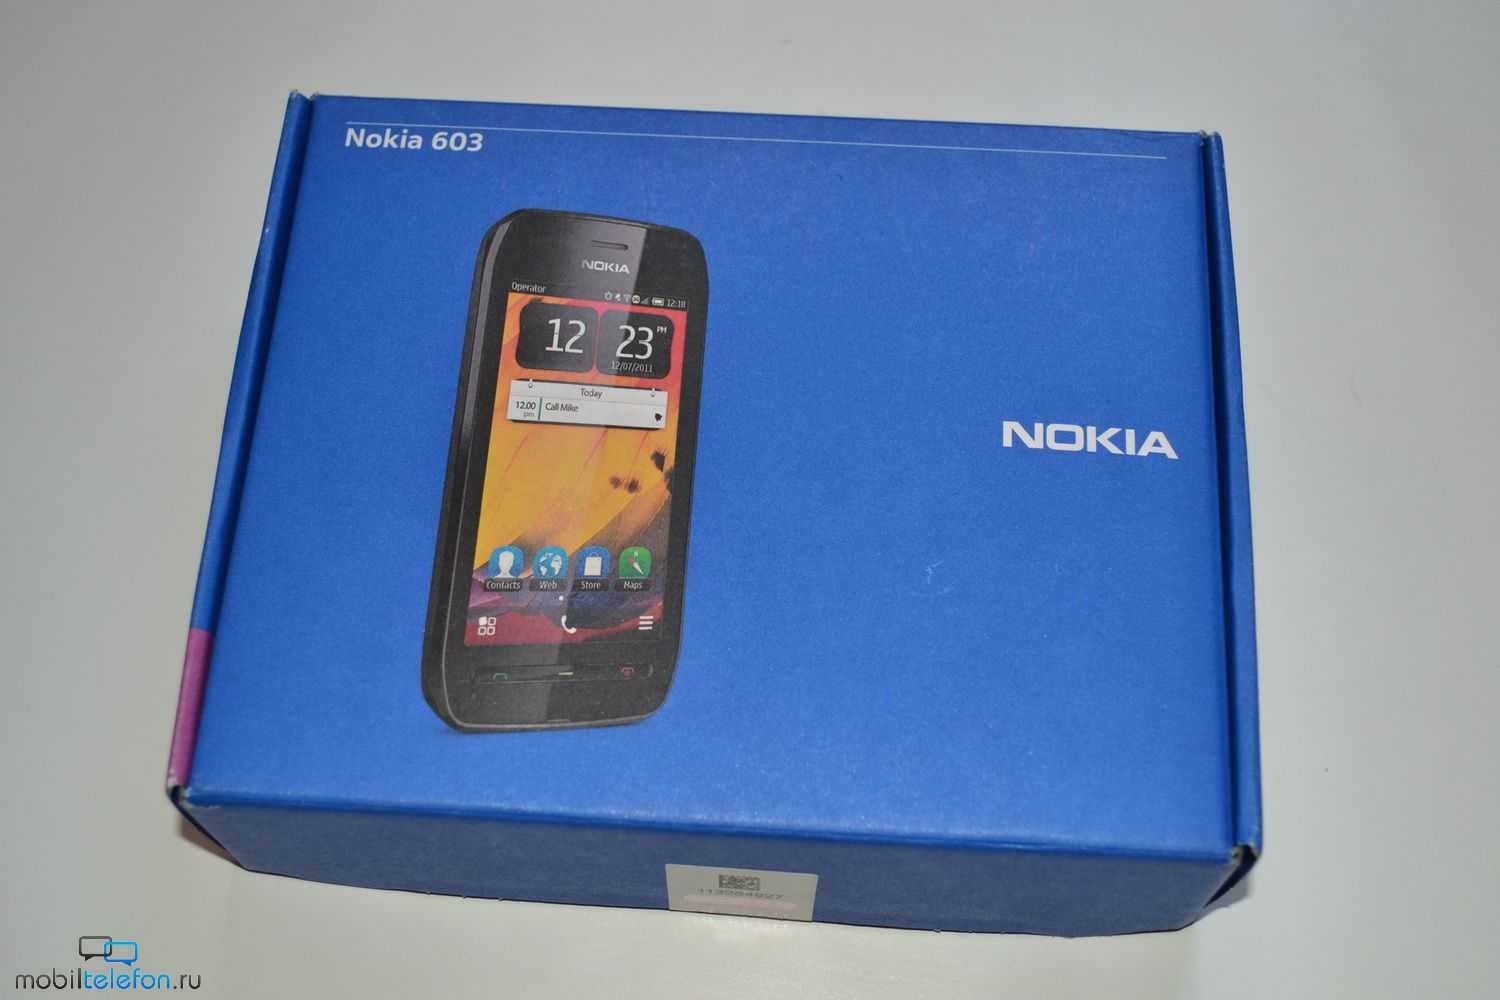 Nokia 603 — описание, характеристики, фото, видео, отзывы